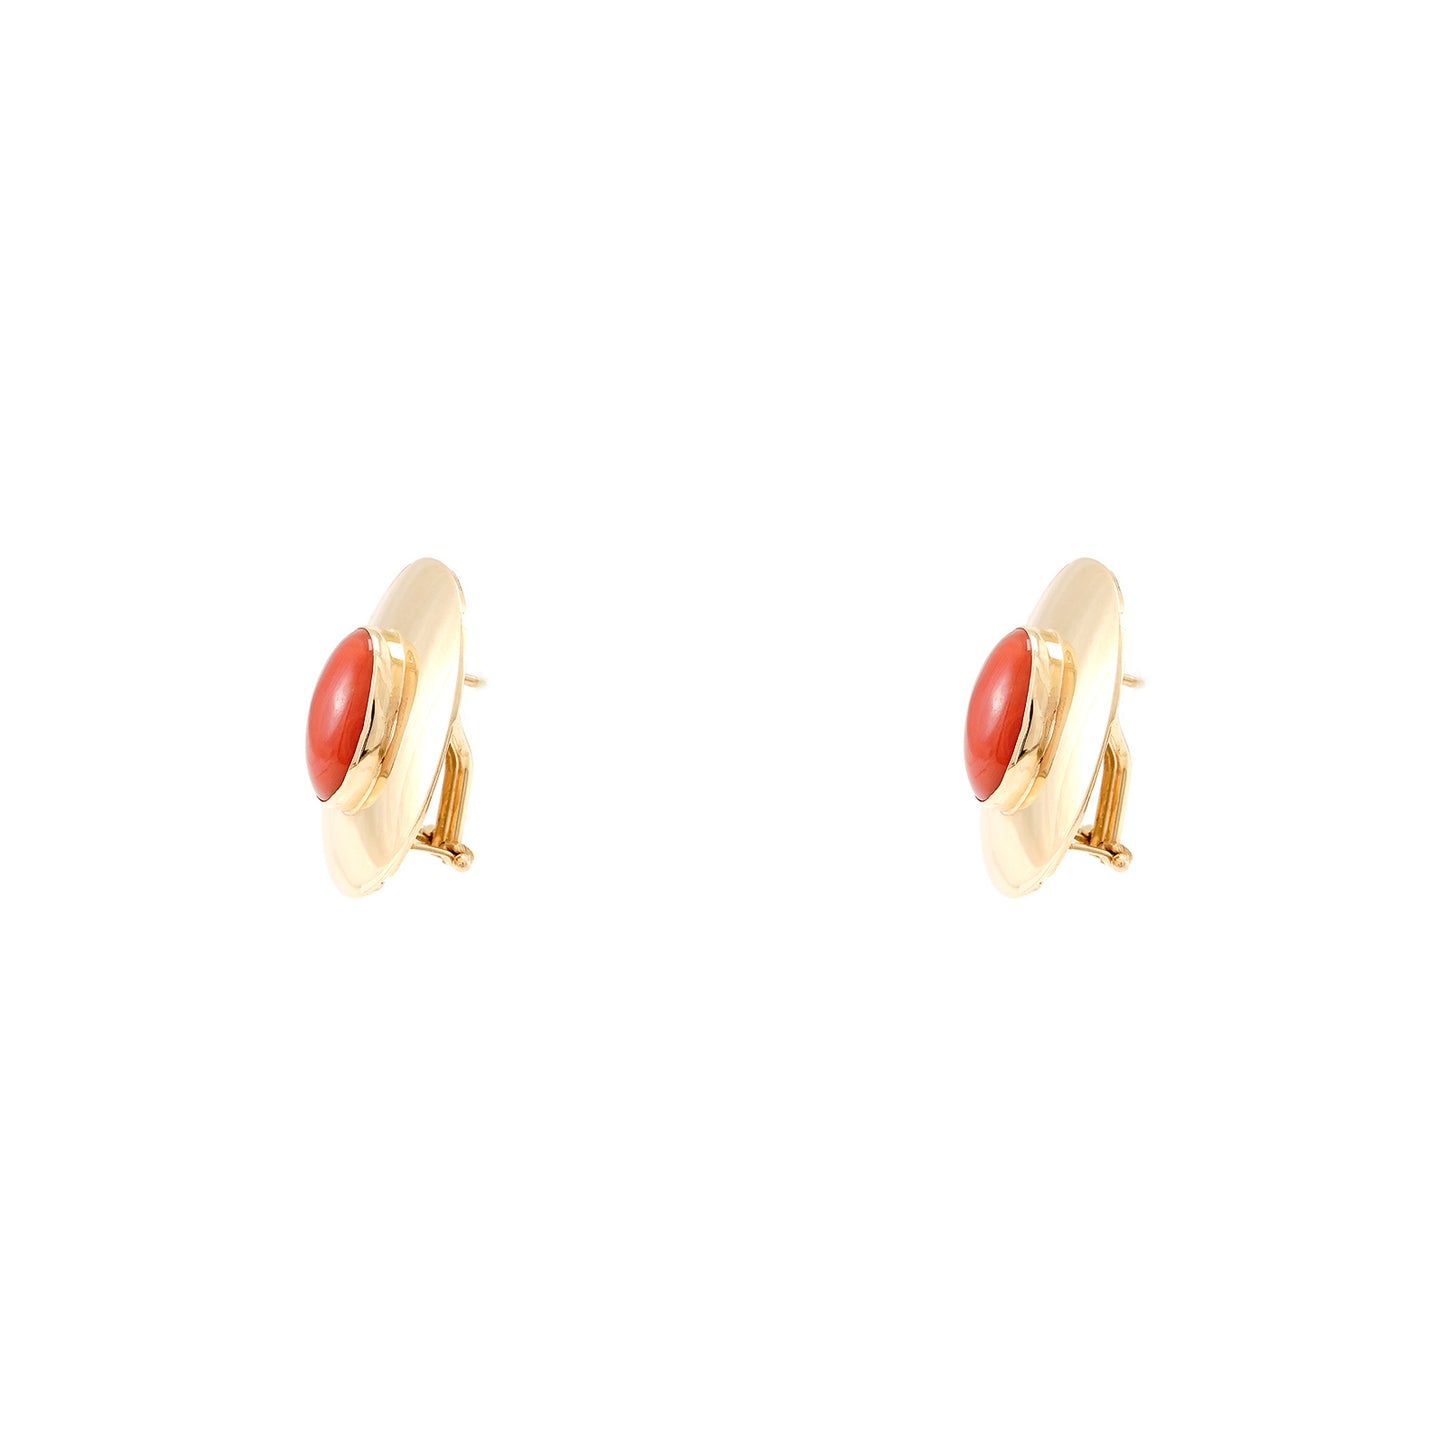 Hoop earrings yellow gold coral 750 18K stud earrings omega clasp women's jewelry earrings